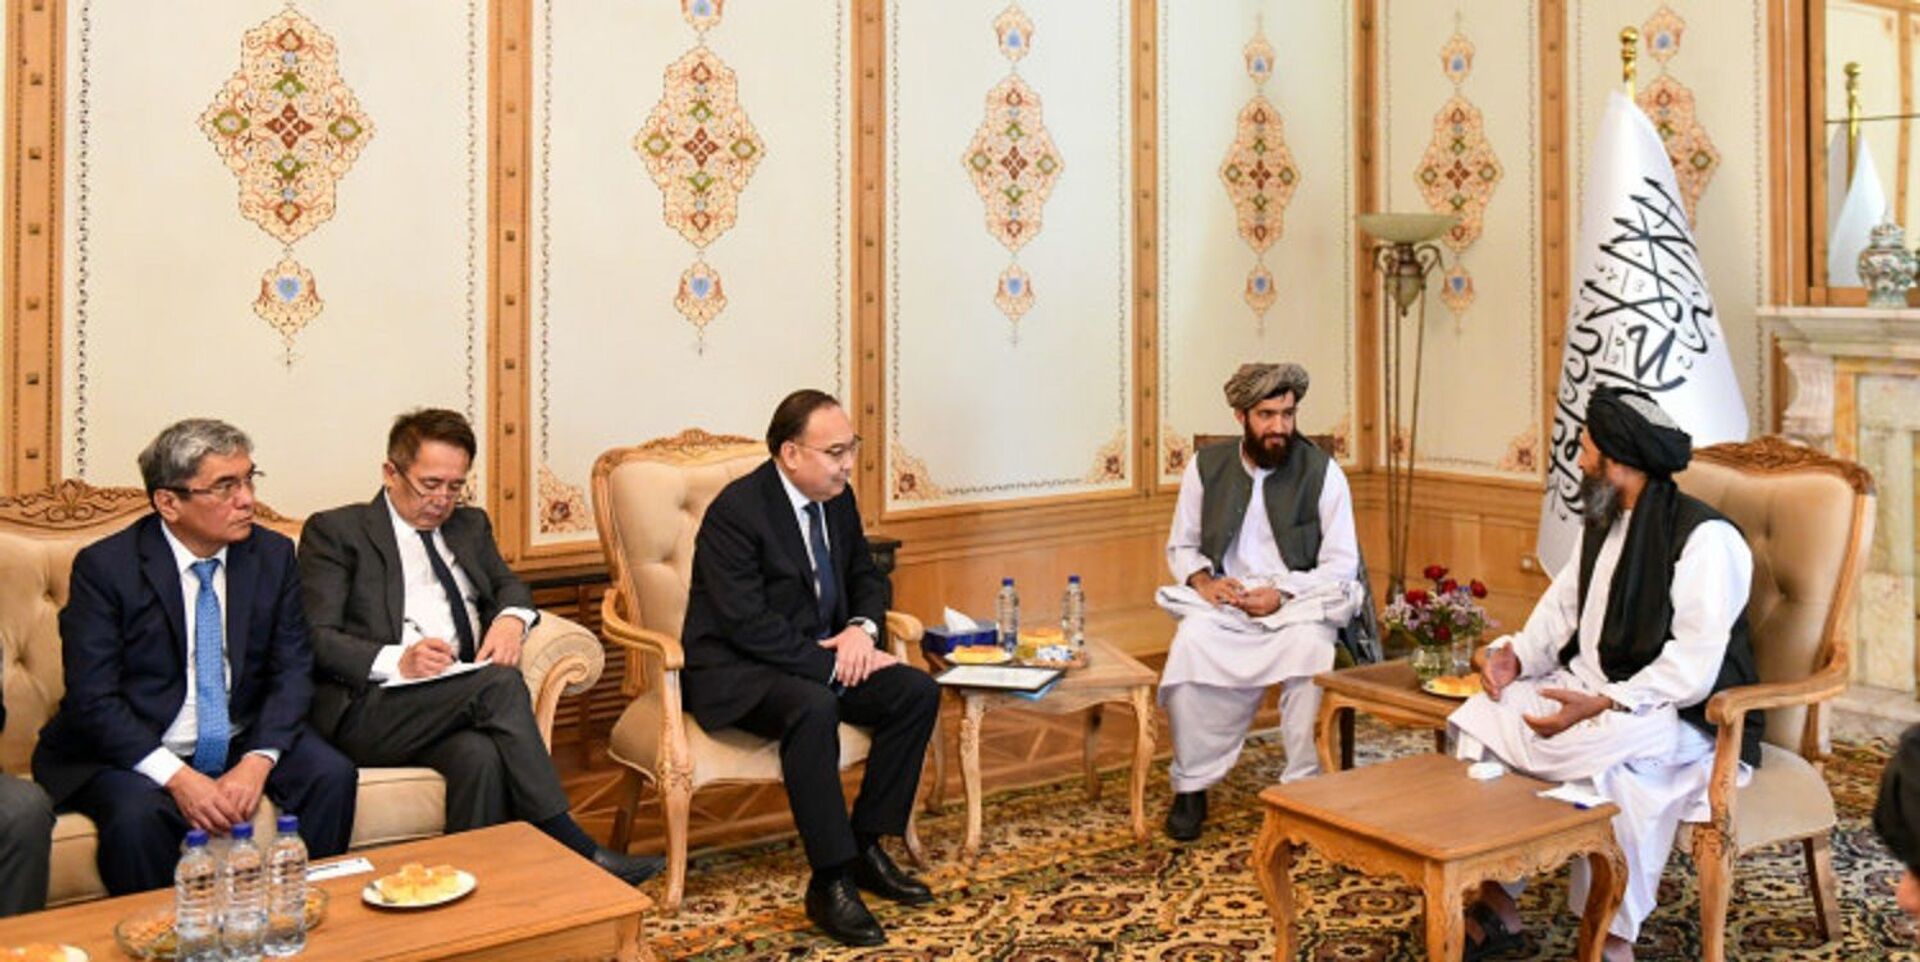 Казахстанская делегация встретилась с представителями Талибана* в Кабуле - фото - Sputnik Казахстан, 1920, 17.10.2021